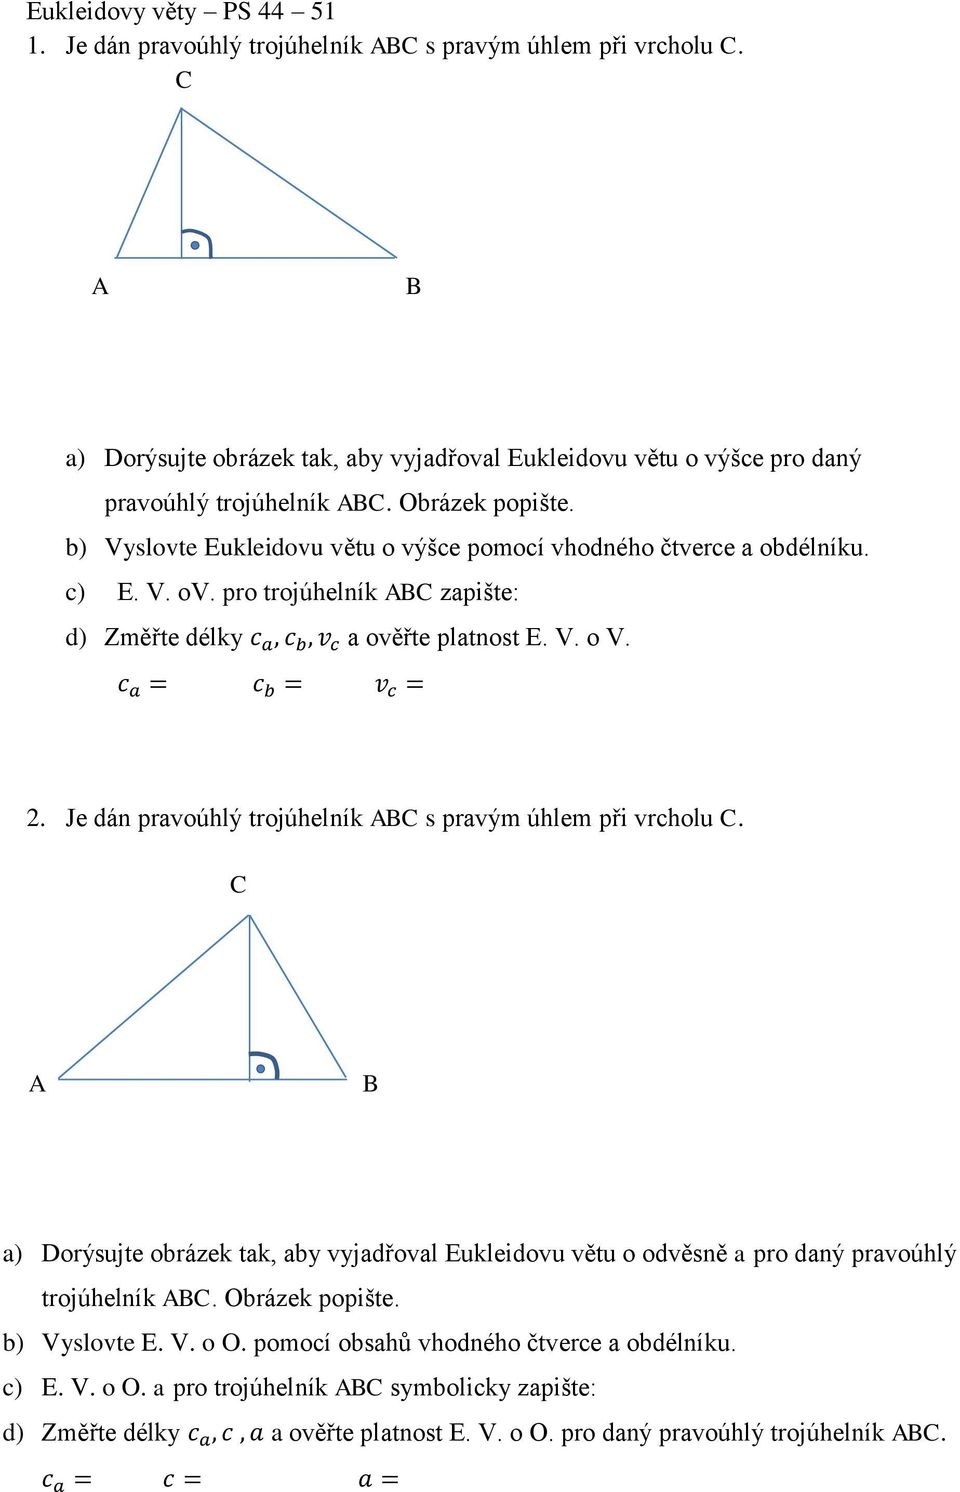 c a = c b = v c = 2. Je dán pravoúhlý trojúhelník AB s pravým úhlem při vrcholu. A B a) Dorýsujte obrázek tak, aby vyjadřoval Eukleidovu větu o odvěsně a pro daný pravoúhlý trojúhelník AB.